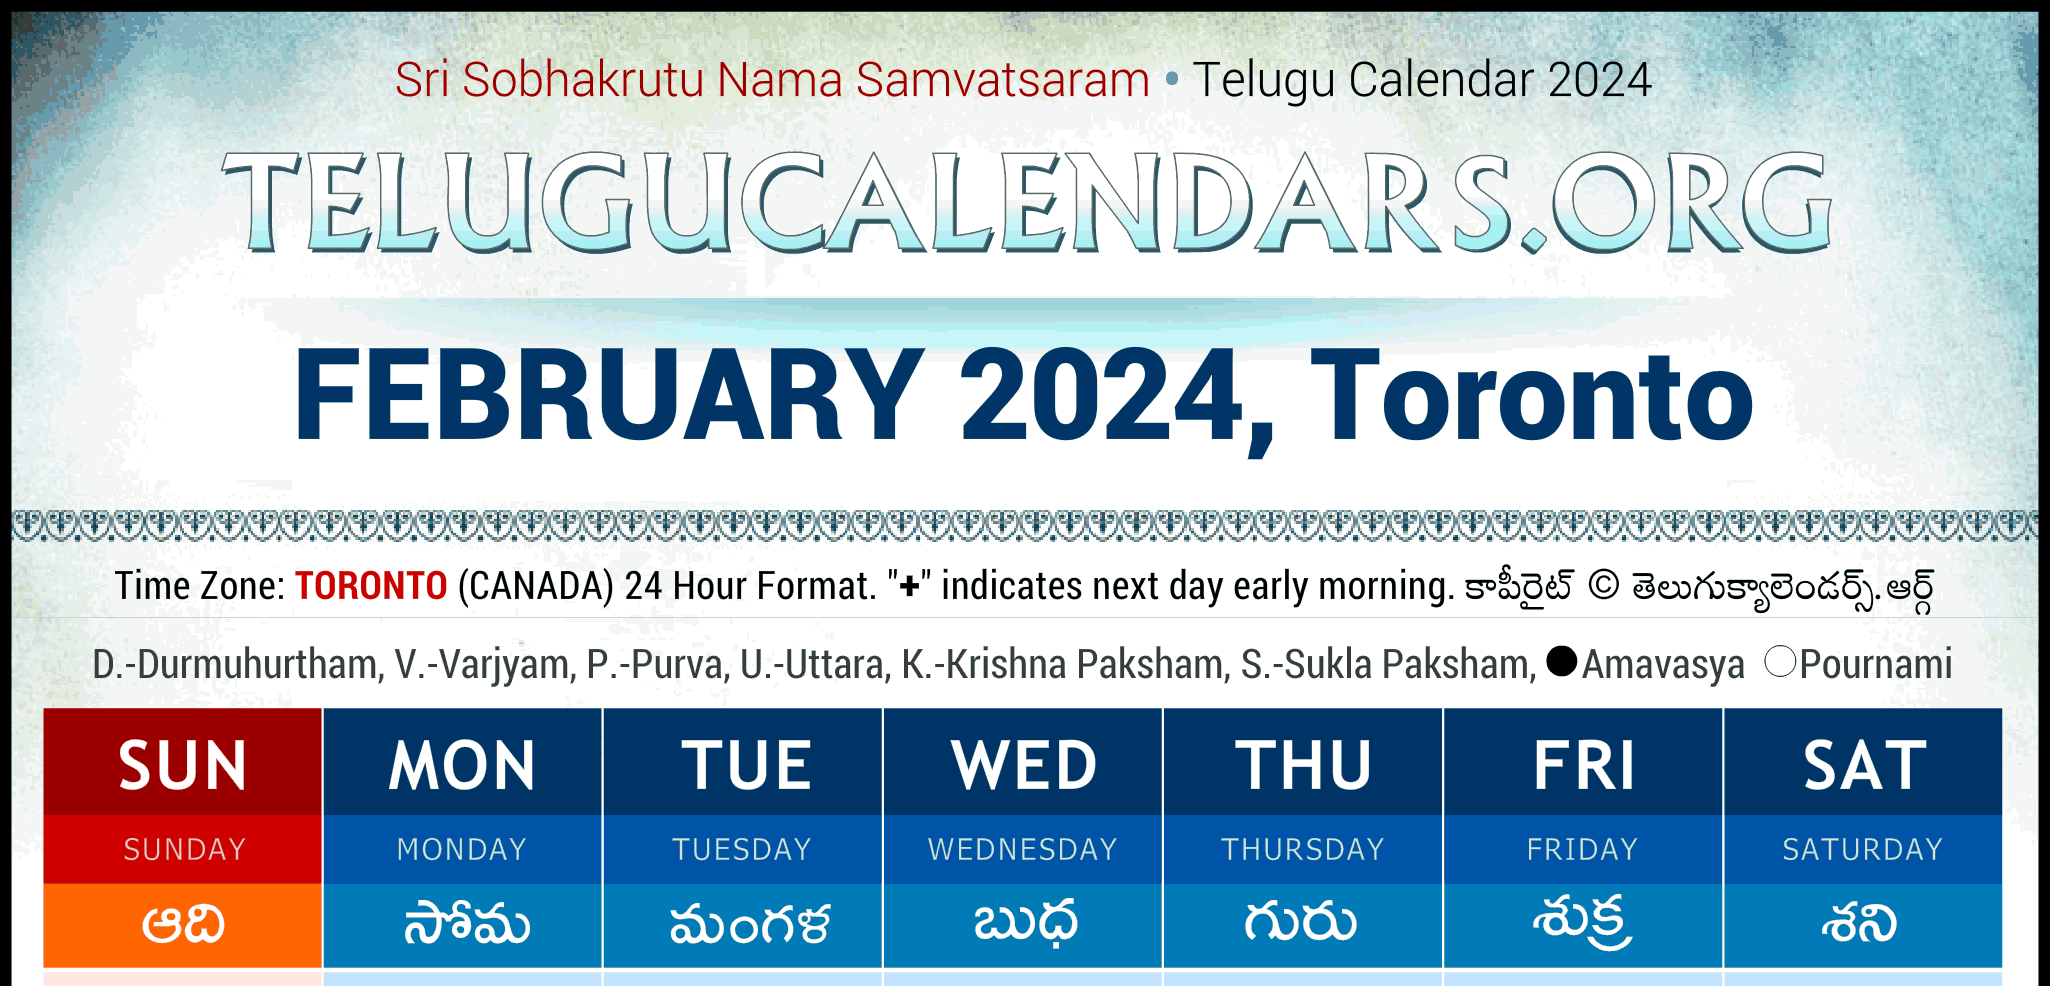 Telugu Calendars 2024 Telugu Panchangam May 27, 2024 Festivals Telugu